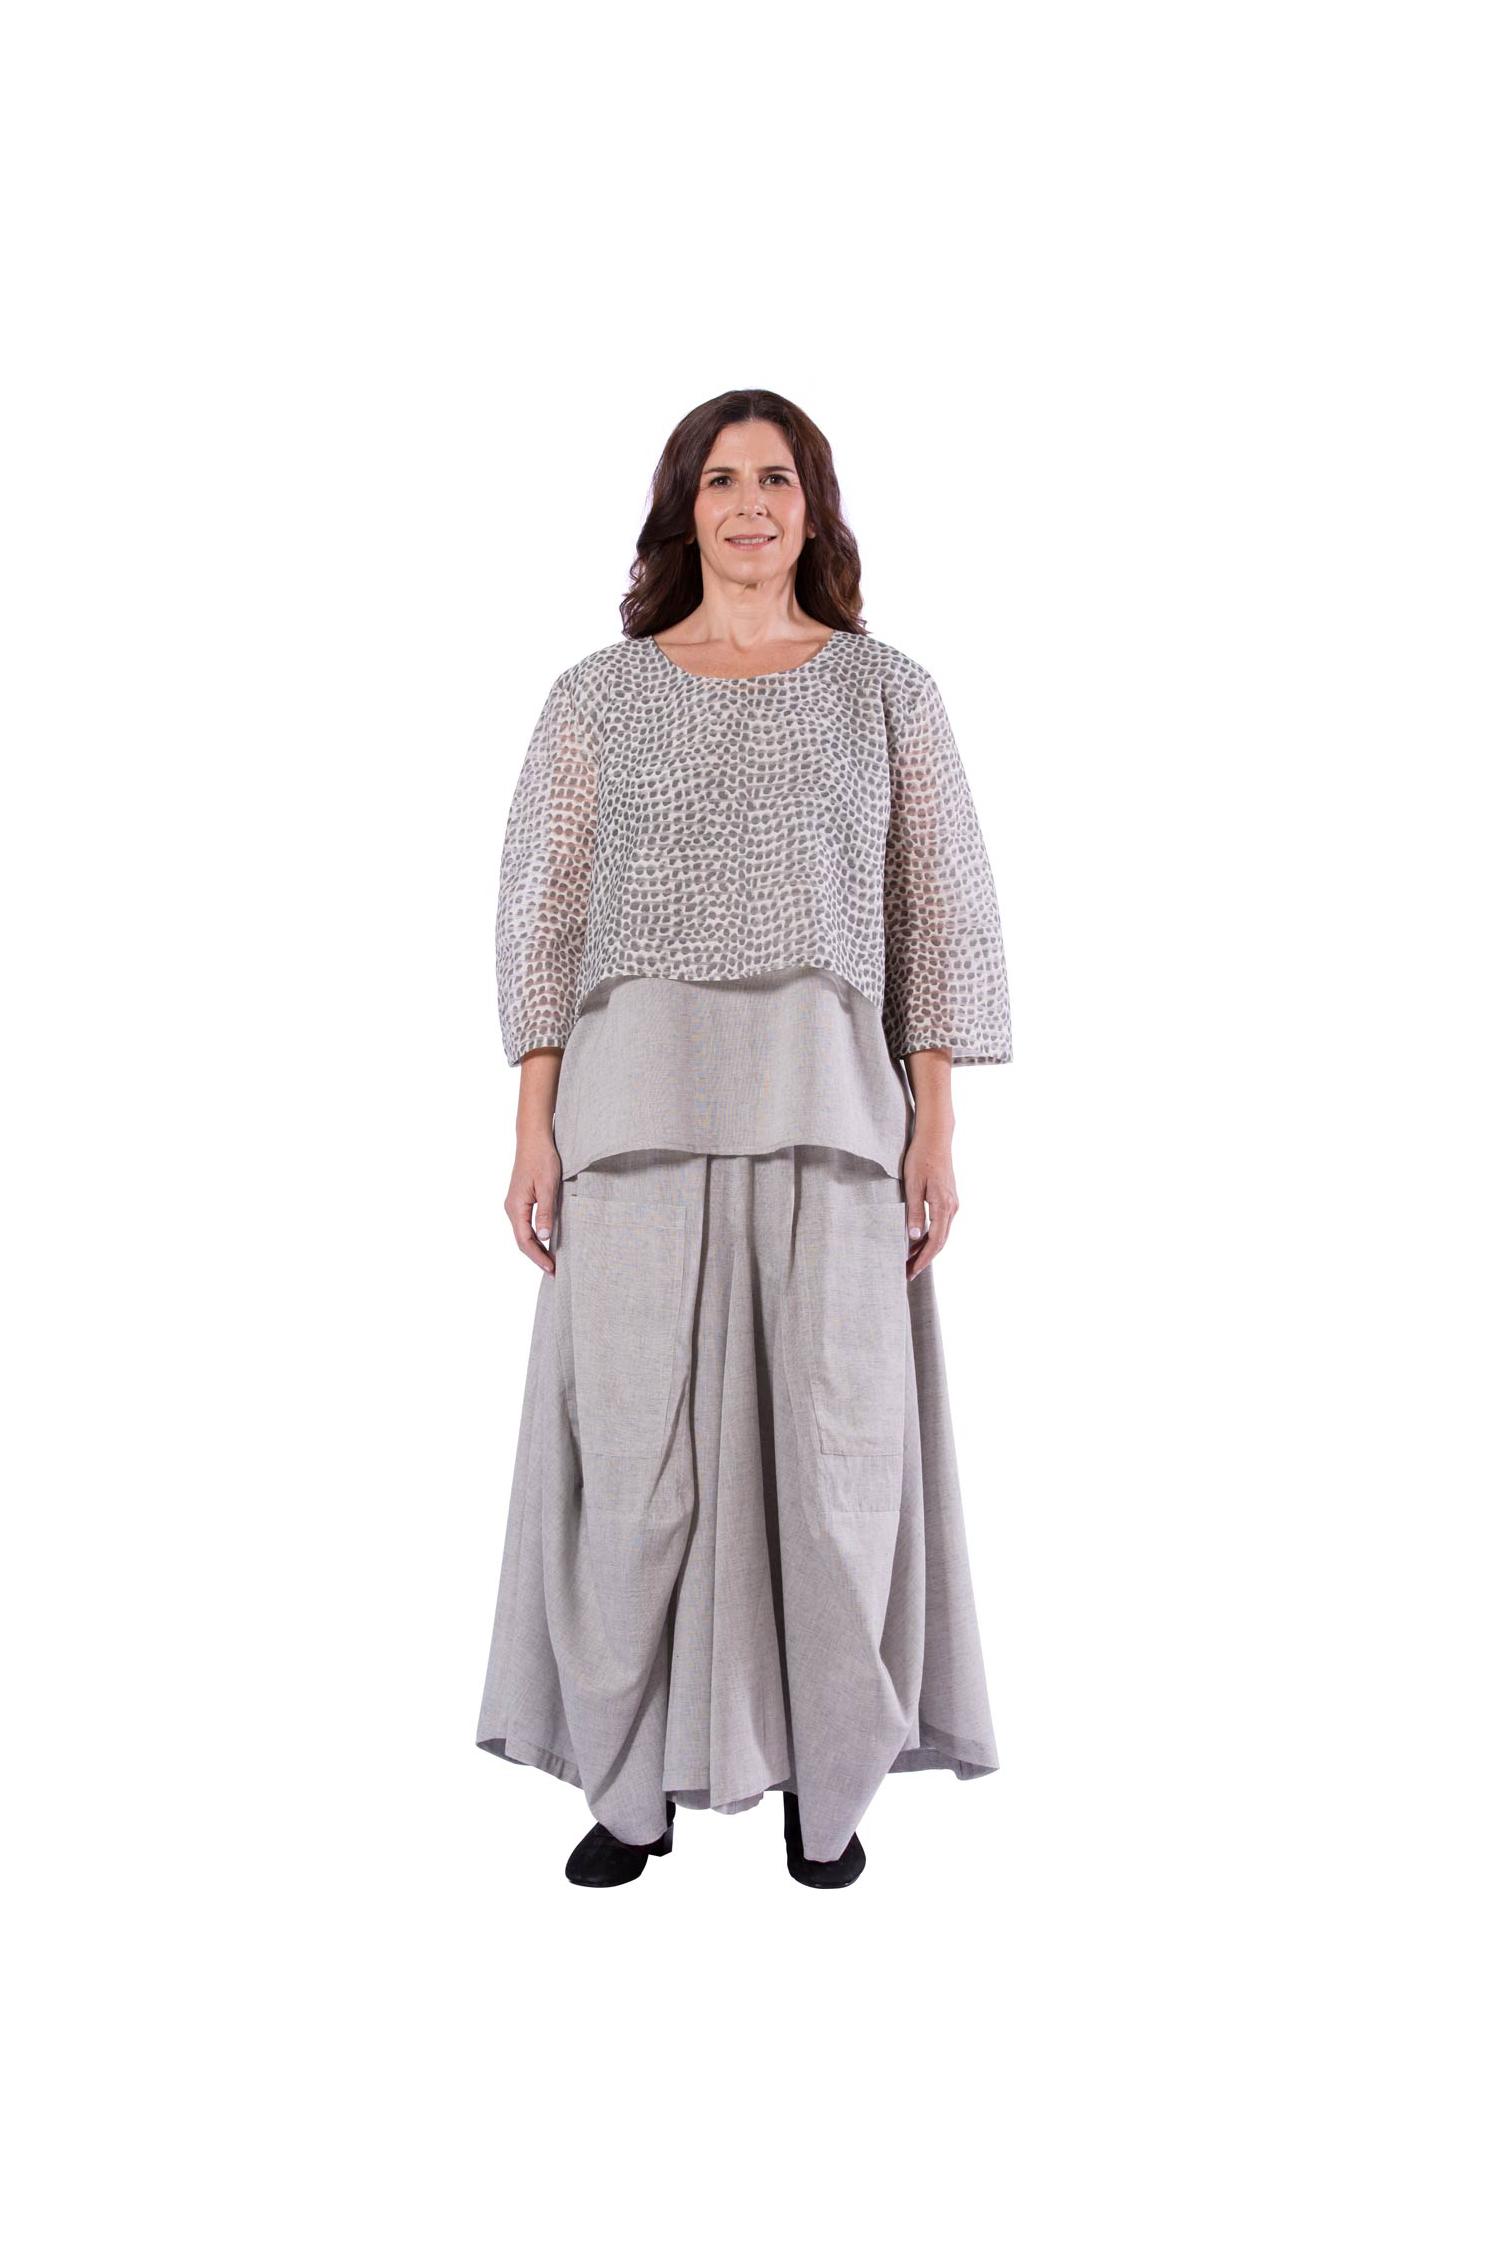 Gray layered skirt